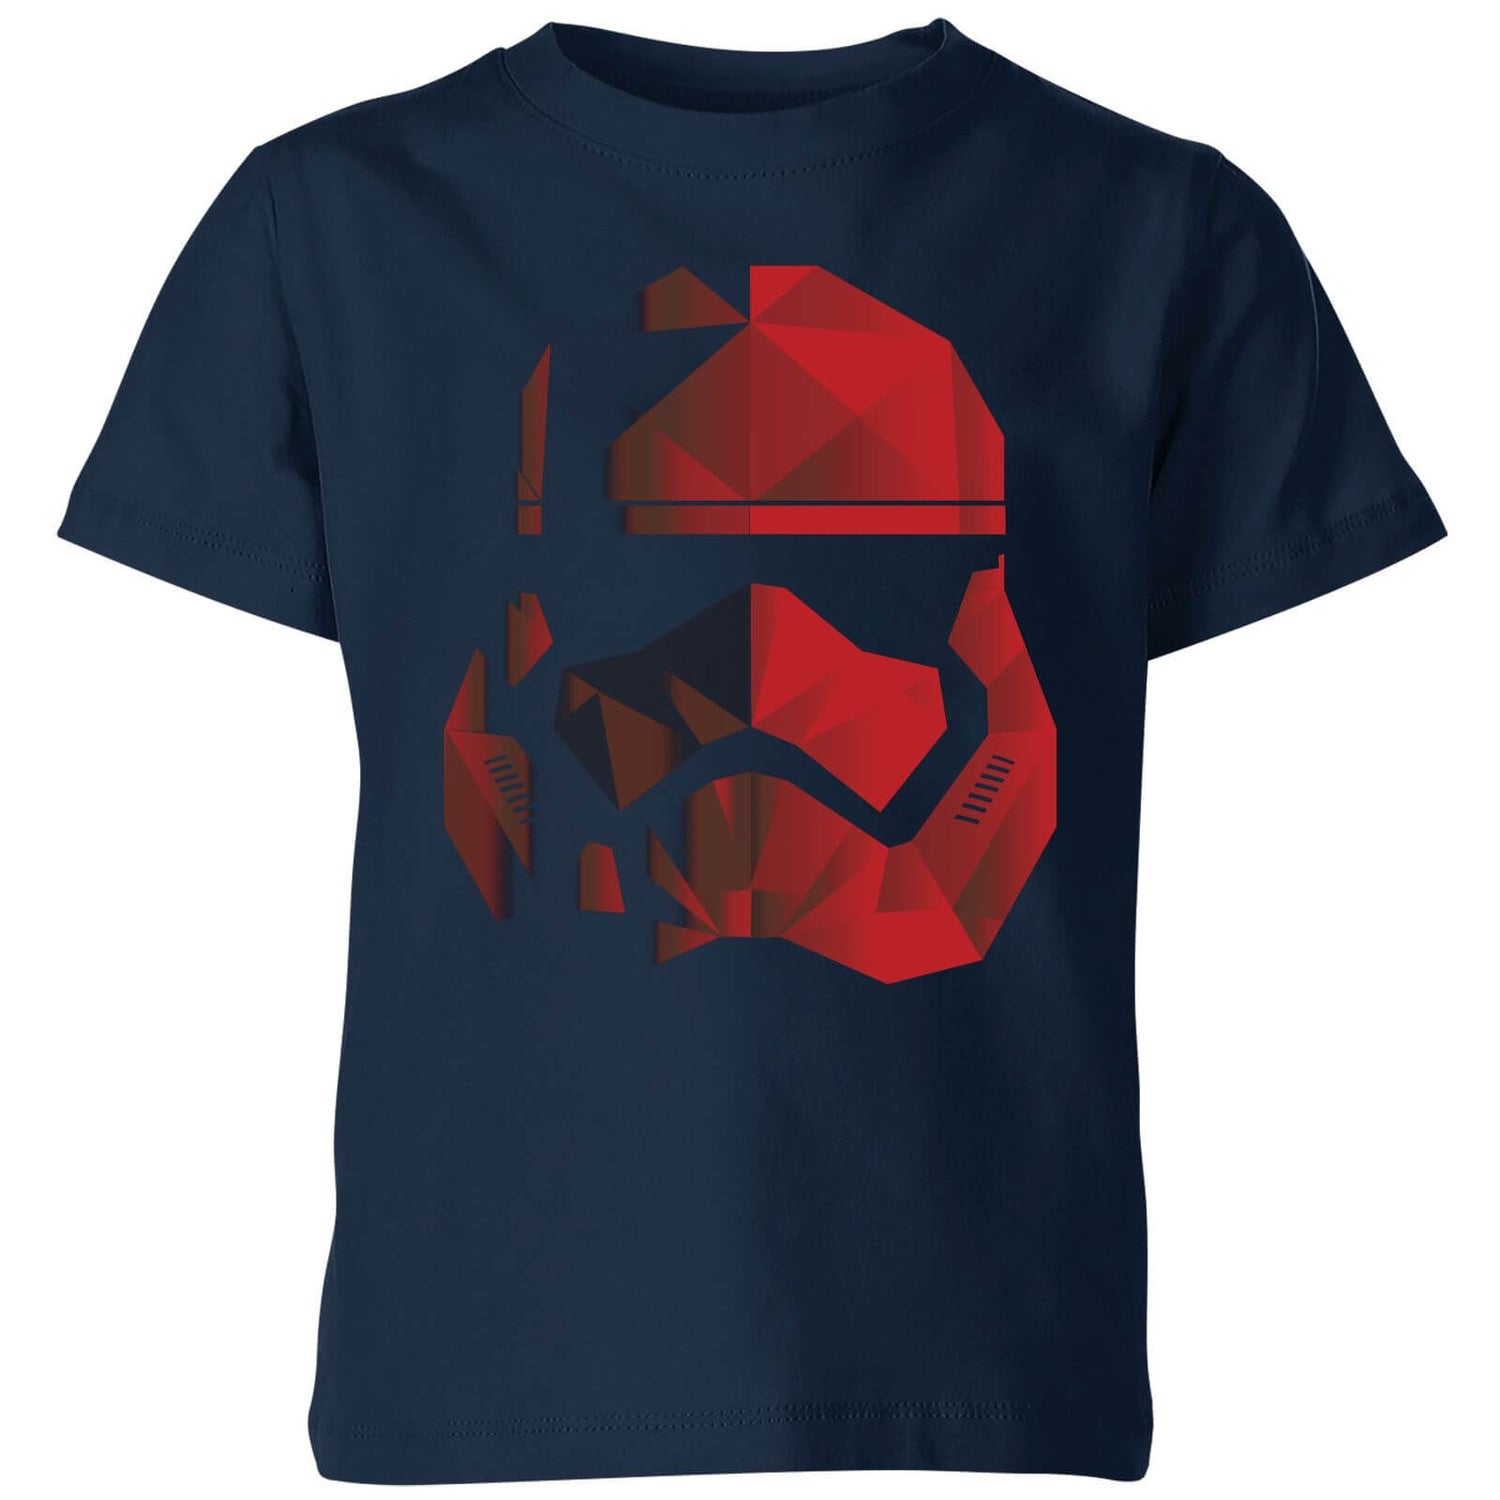 Jedi Cubist Trooper Helmet Black Kids' T-Shirt - Navy